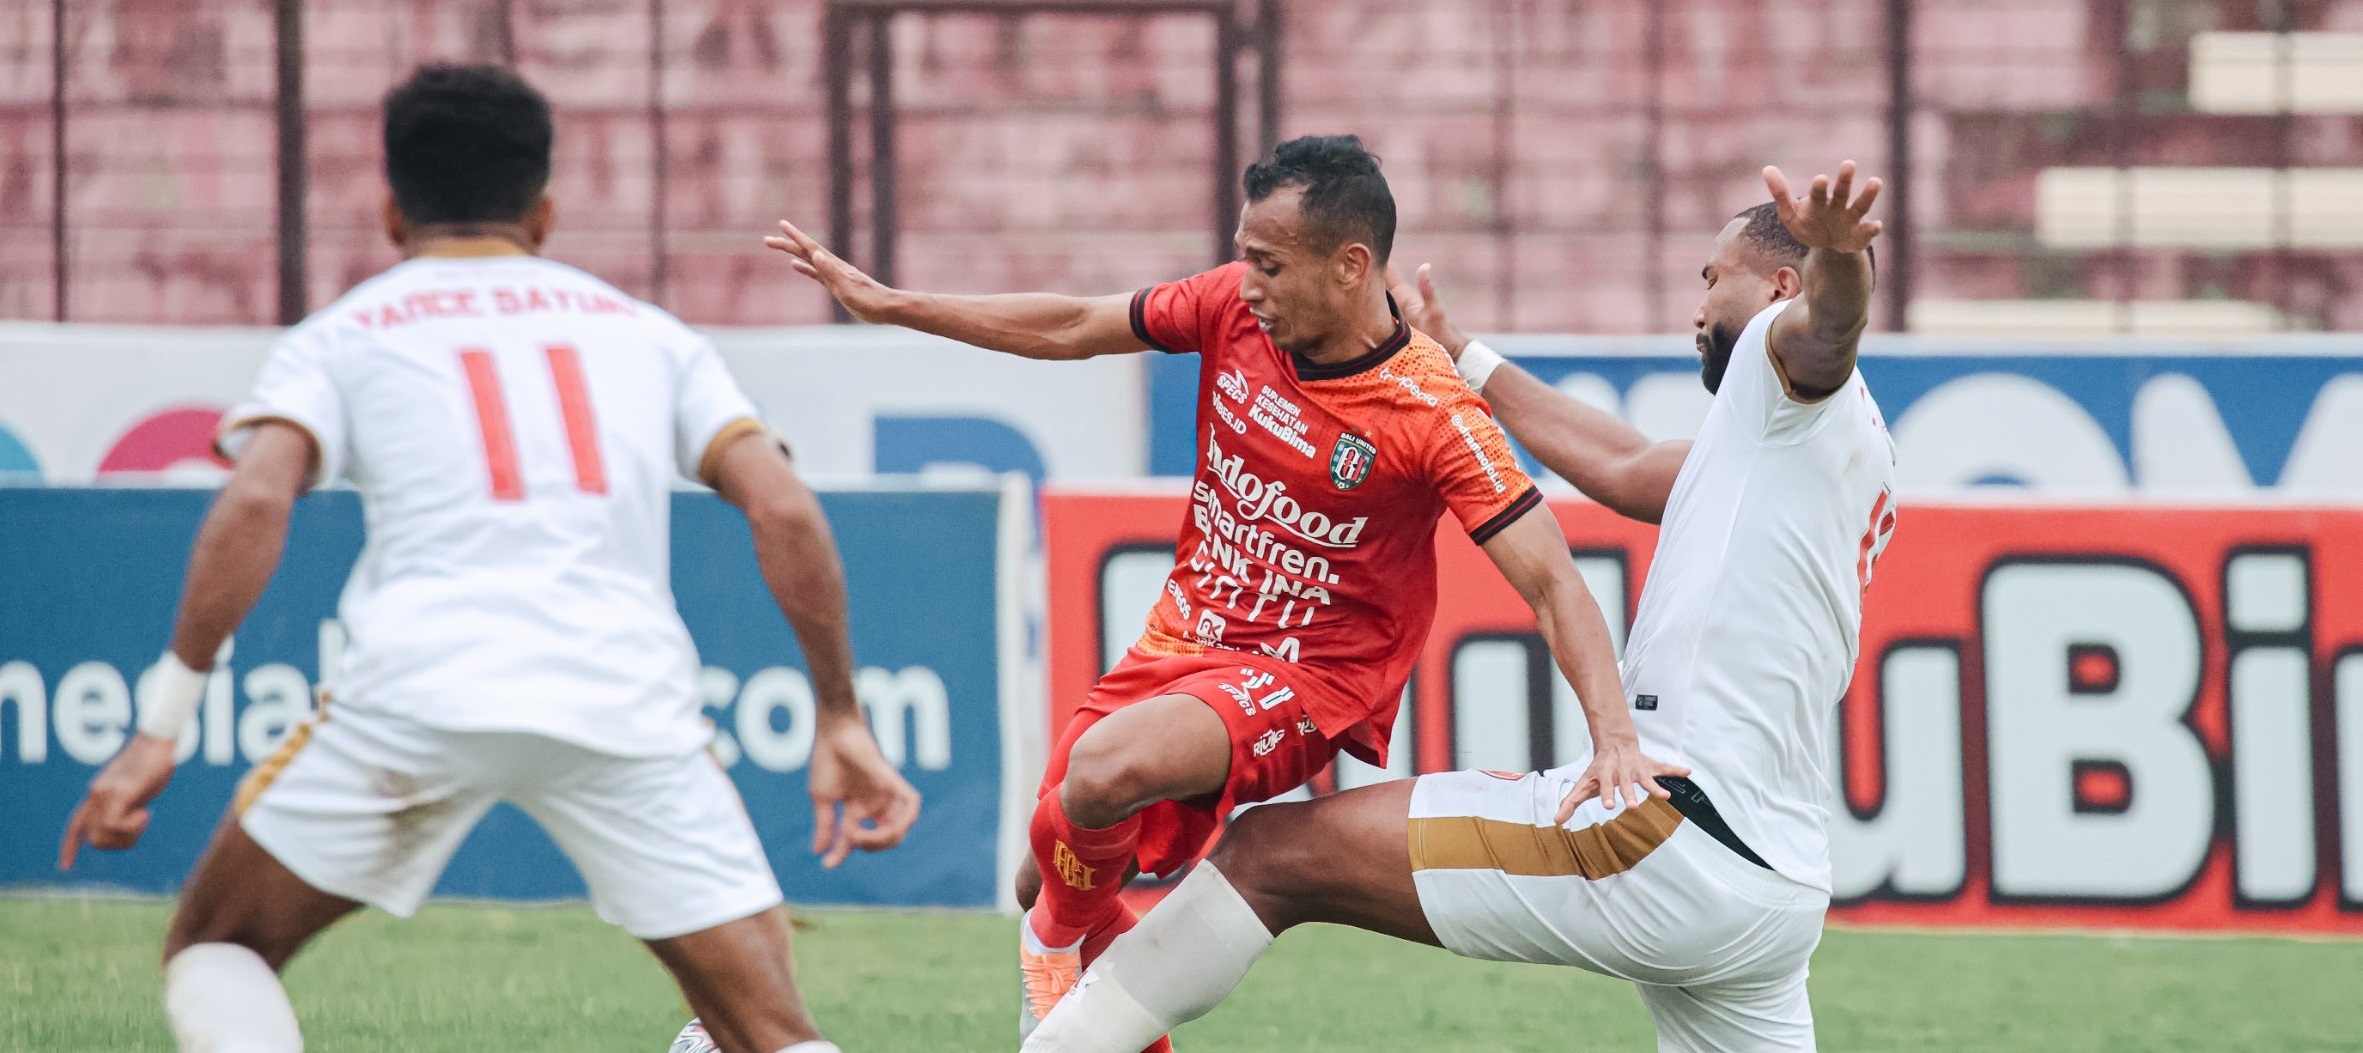 Seru dan Panas, Laga Akbar Bali United Kontra PSM Makassar Berakhir Imbang 2-2